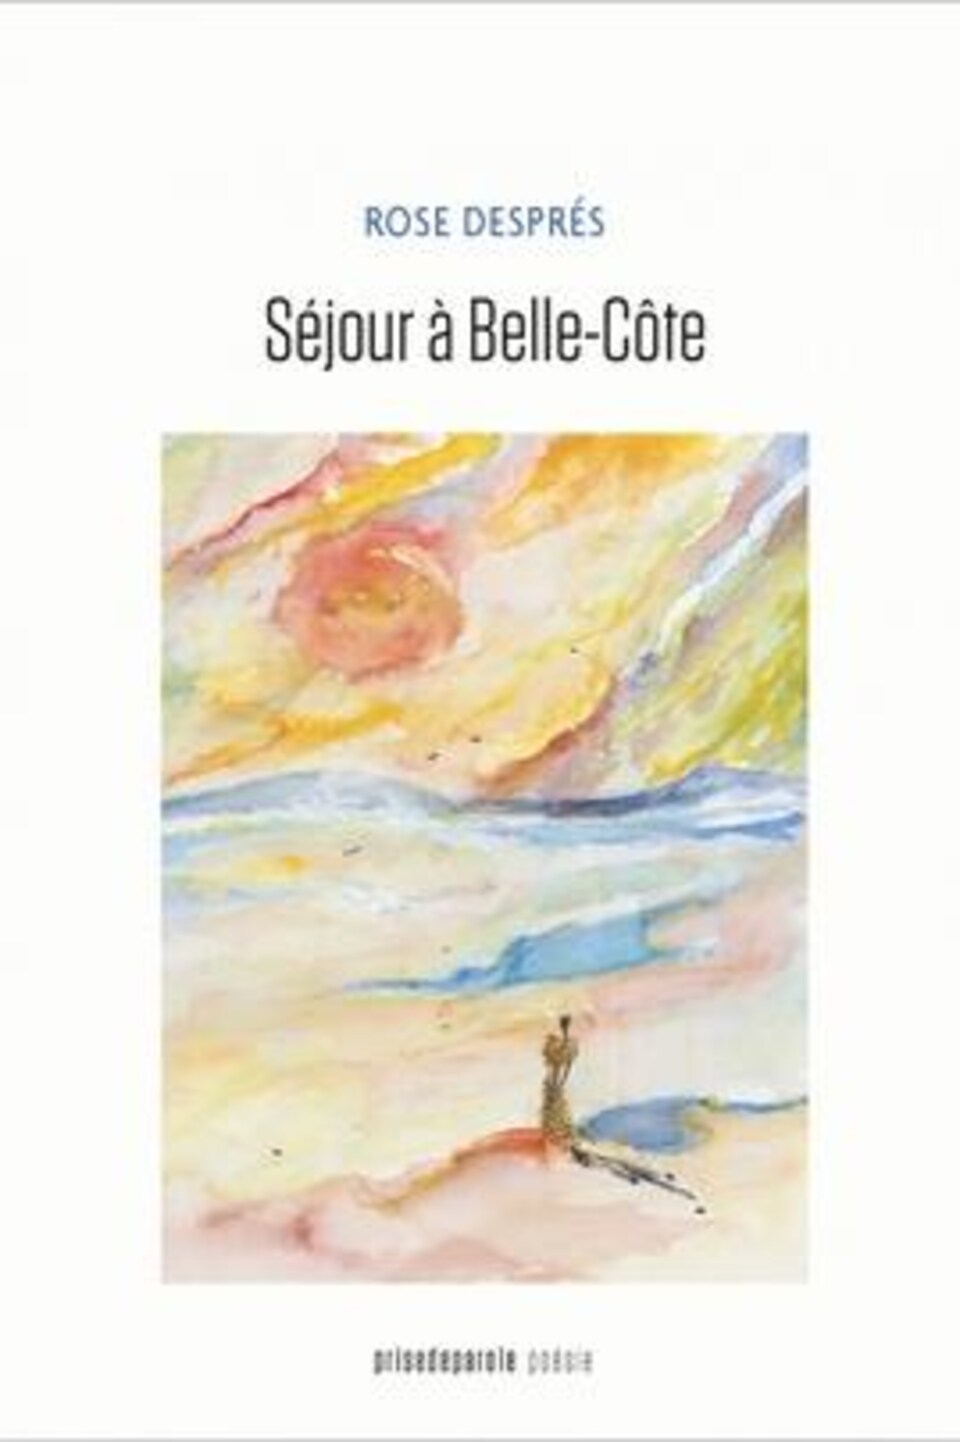 Sur la page couverture du livre, il y a un dessin d'une personne qui regarde l'horizon coloré.